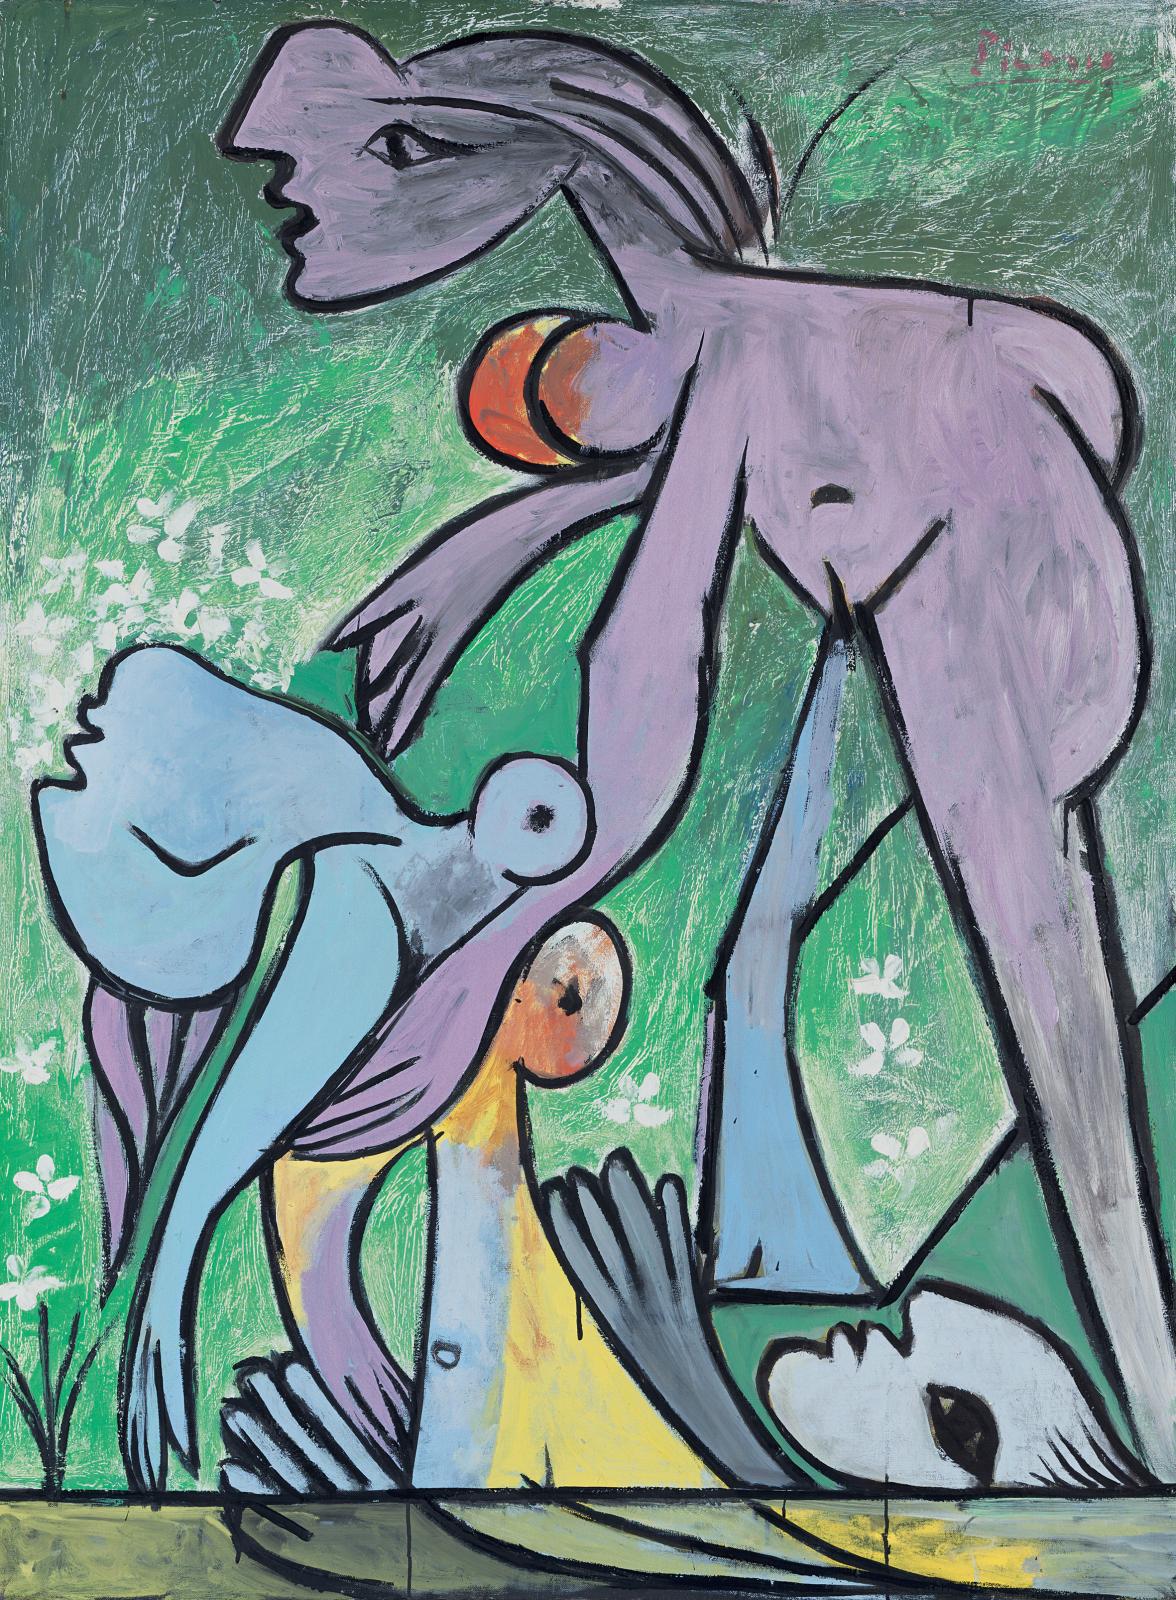 Pablo Picasso (1881-1973), Le Sauvetage, 1932, huile sur toile, 130 x 97,5 cm, fondation Beyeler, Riehen/Bâle, collection Beyeler. 